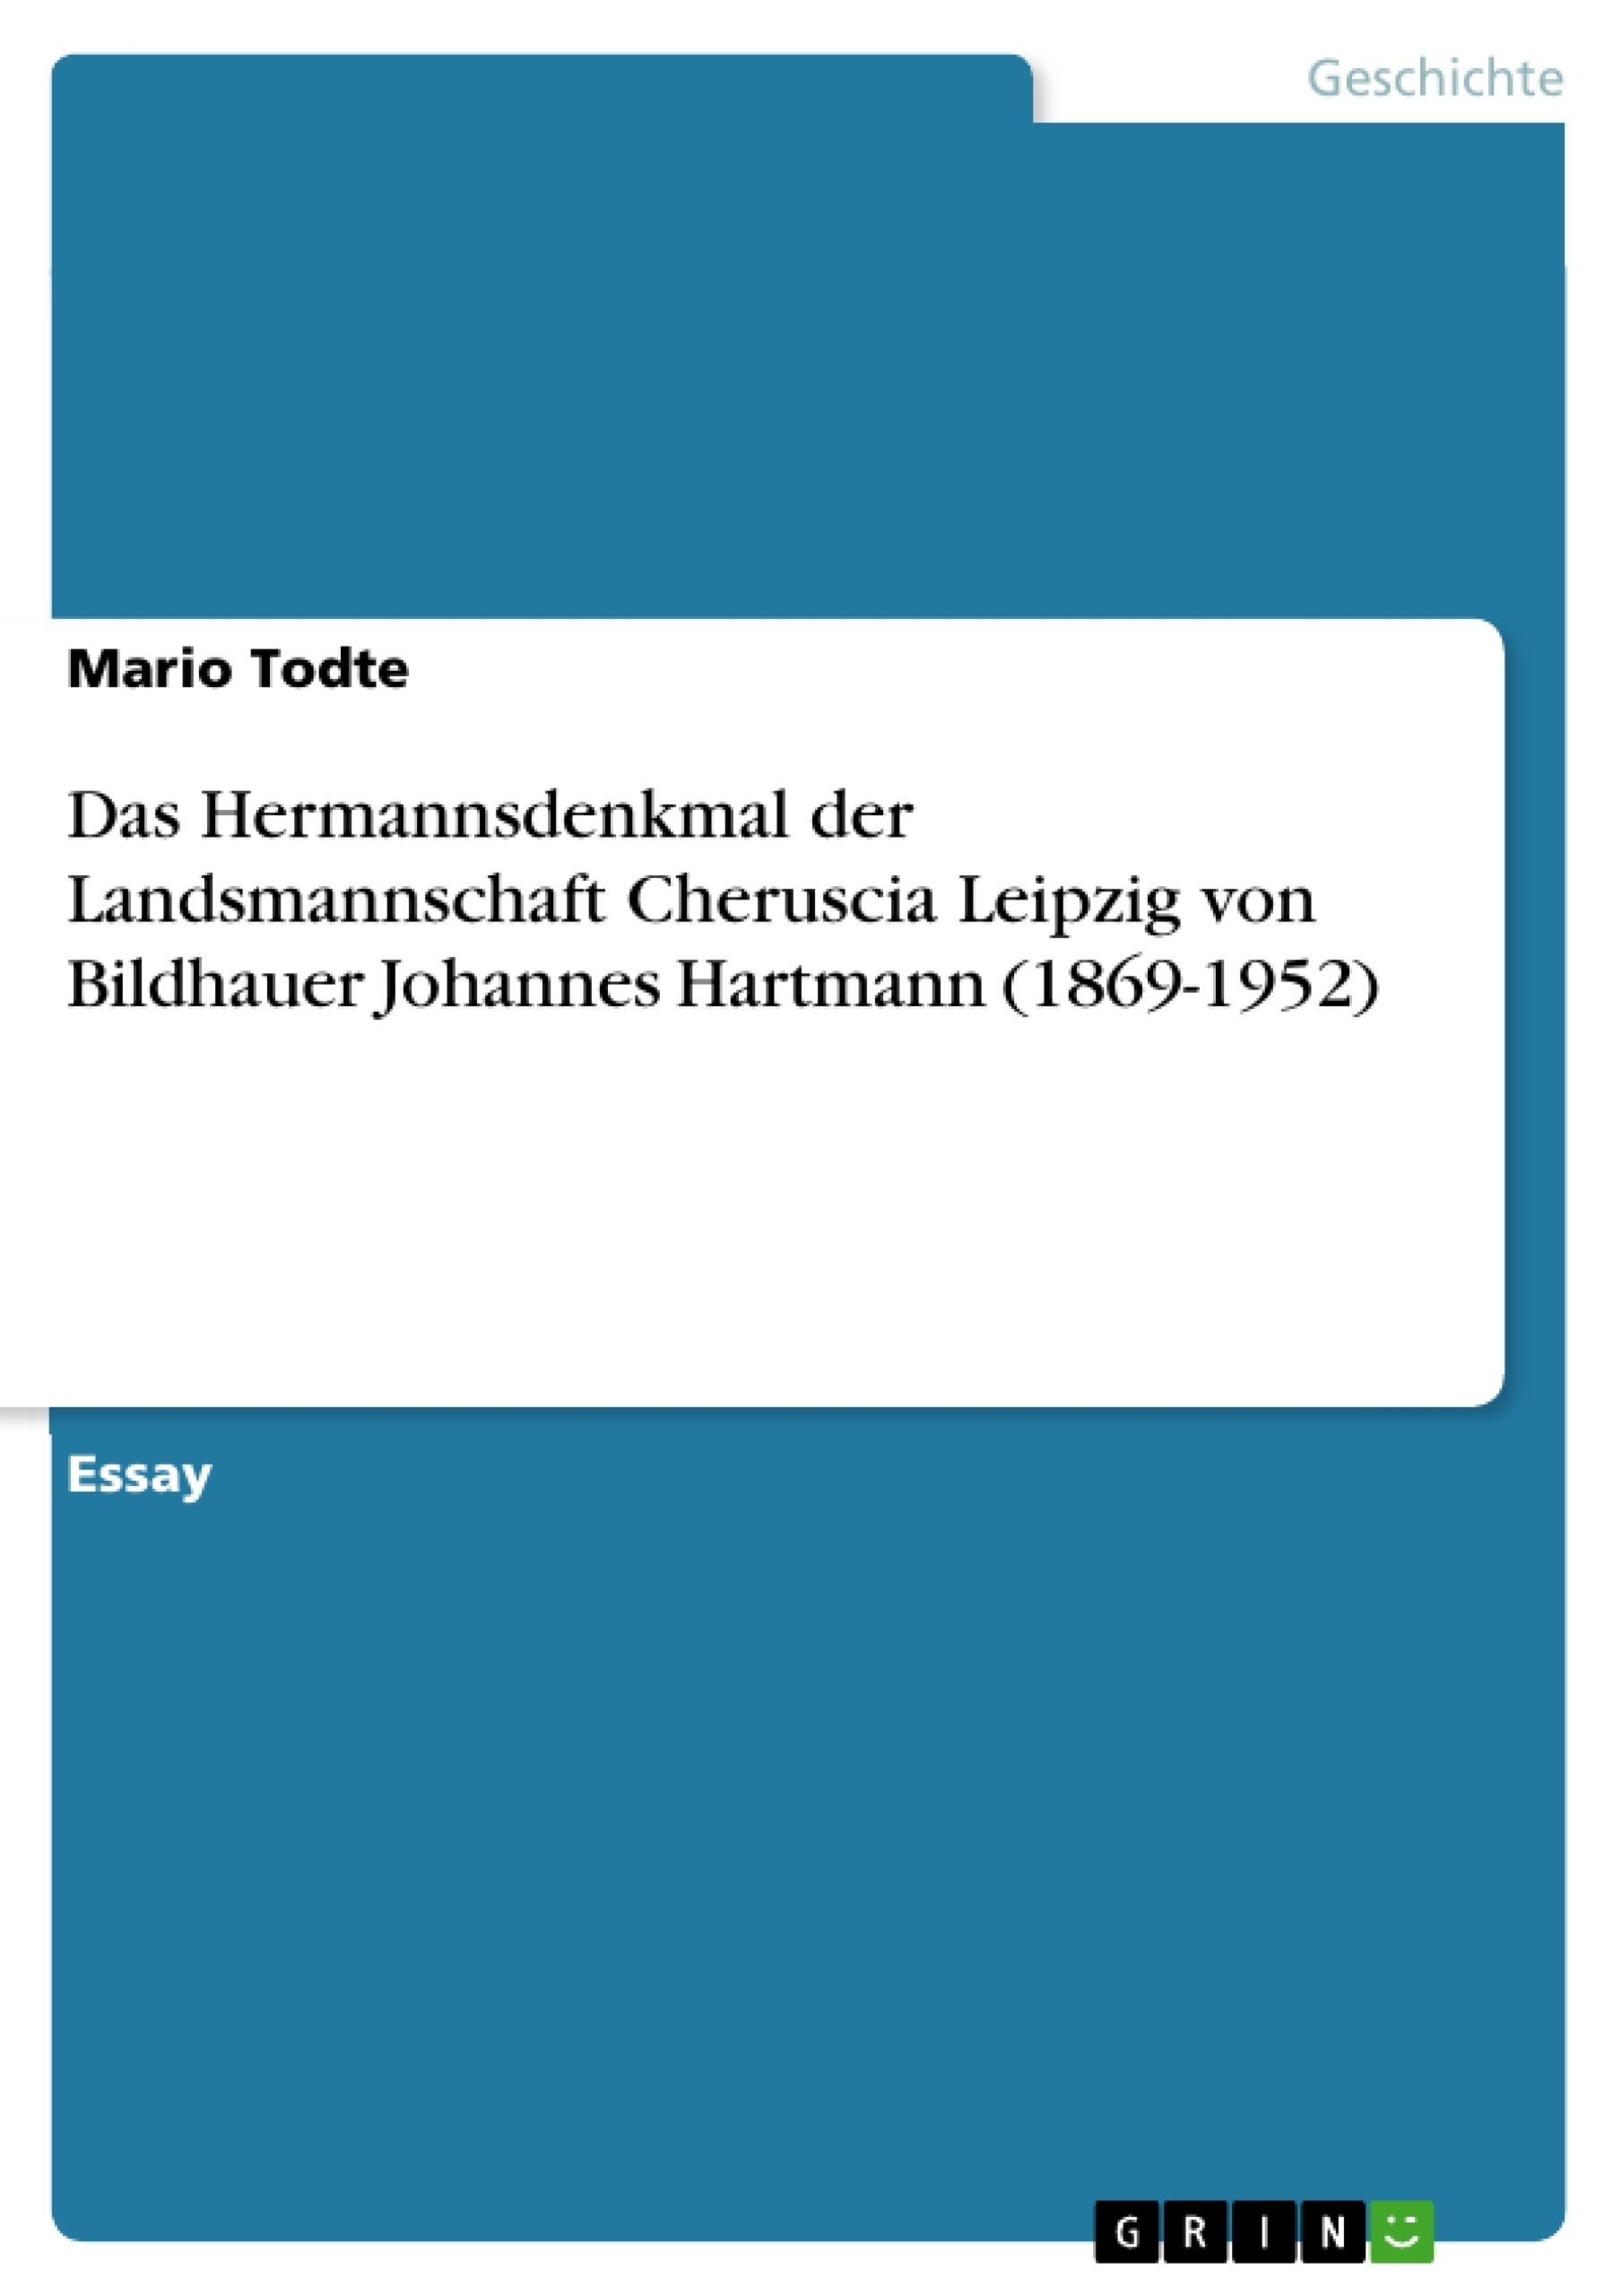 Título: Das Hermannsdenkmal der Landsmannschaft Cheruscia Leipzig von Bildhauer Johannes Hartmann (1869-1952)